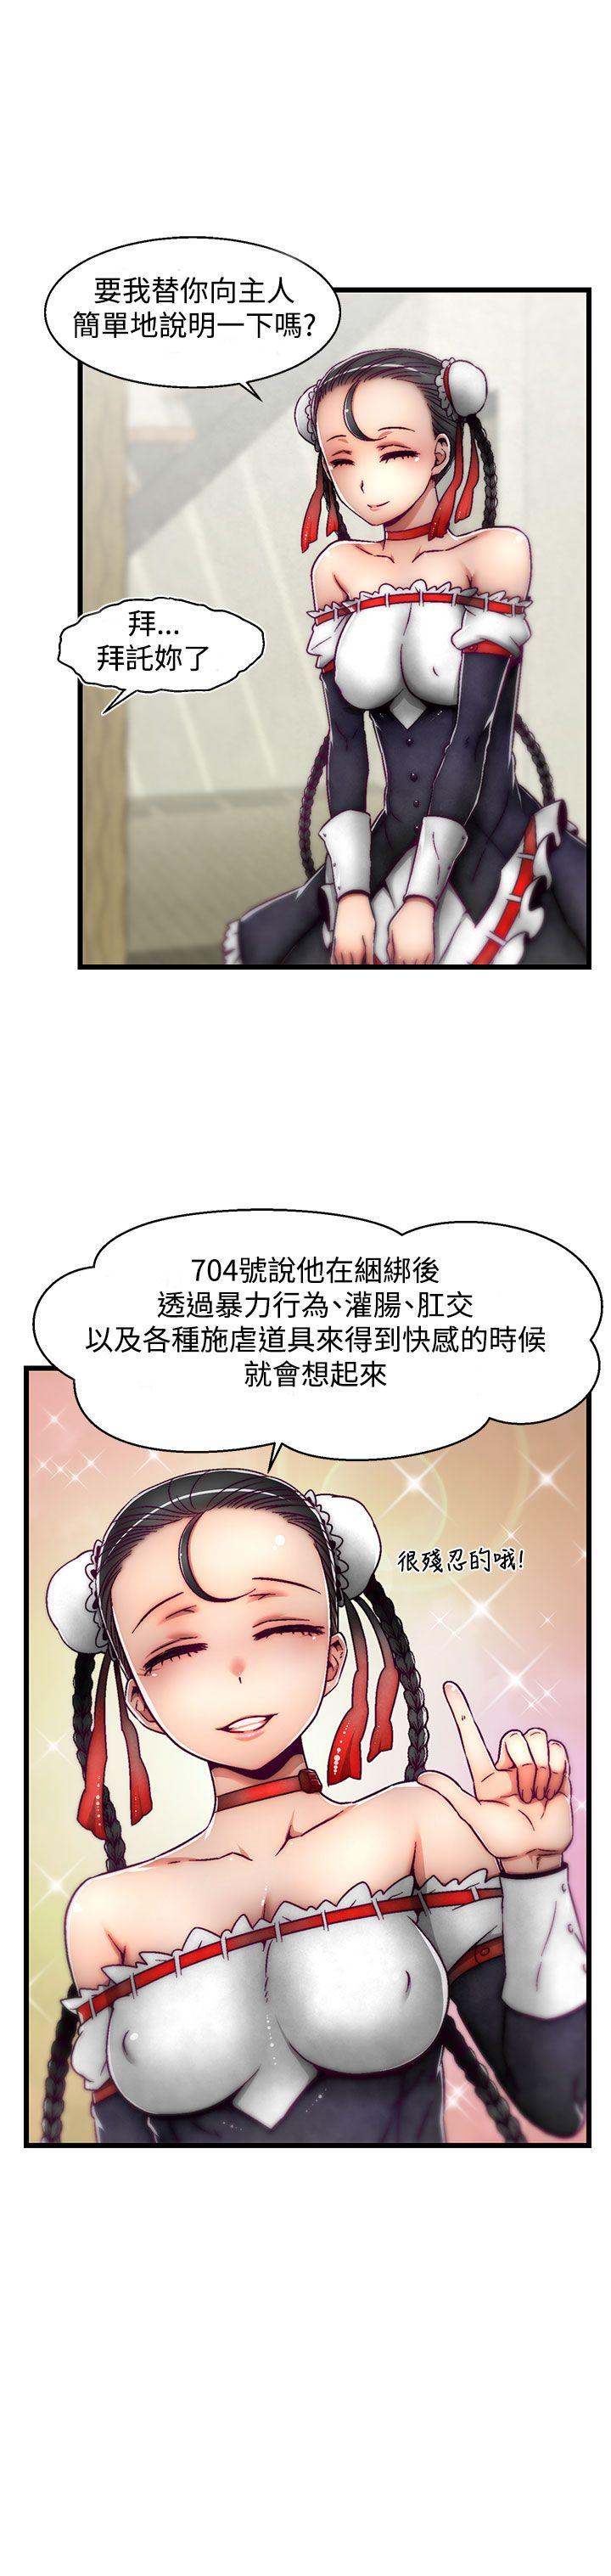 韩国污漫画 啪啪啪調教所 第5话(第2季) 4